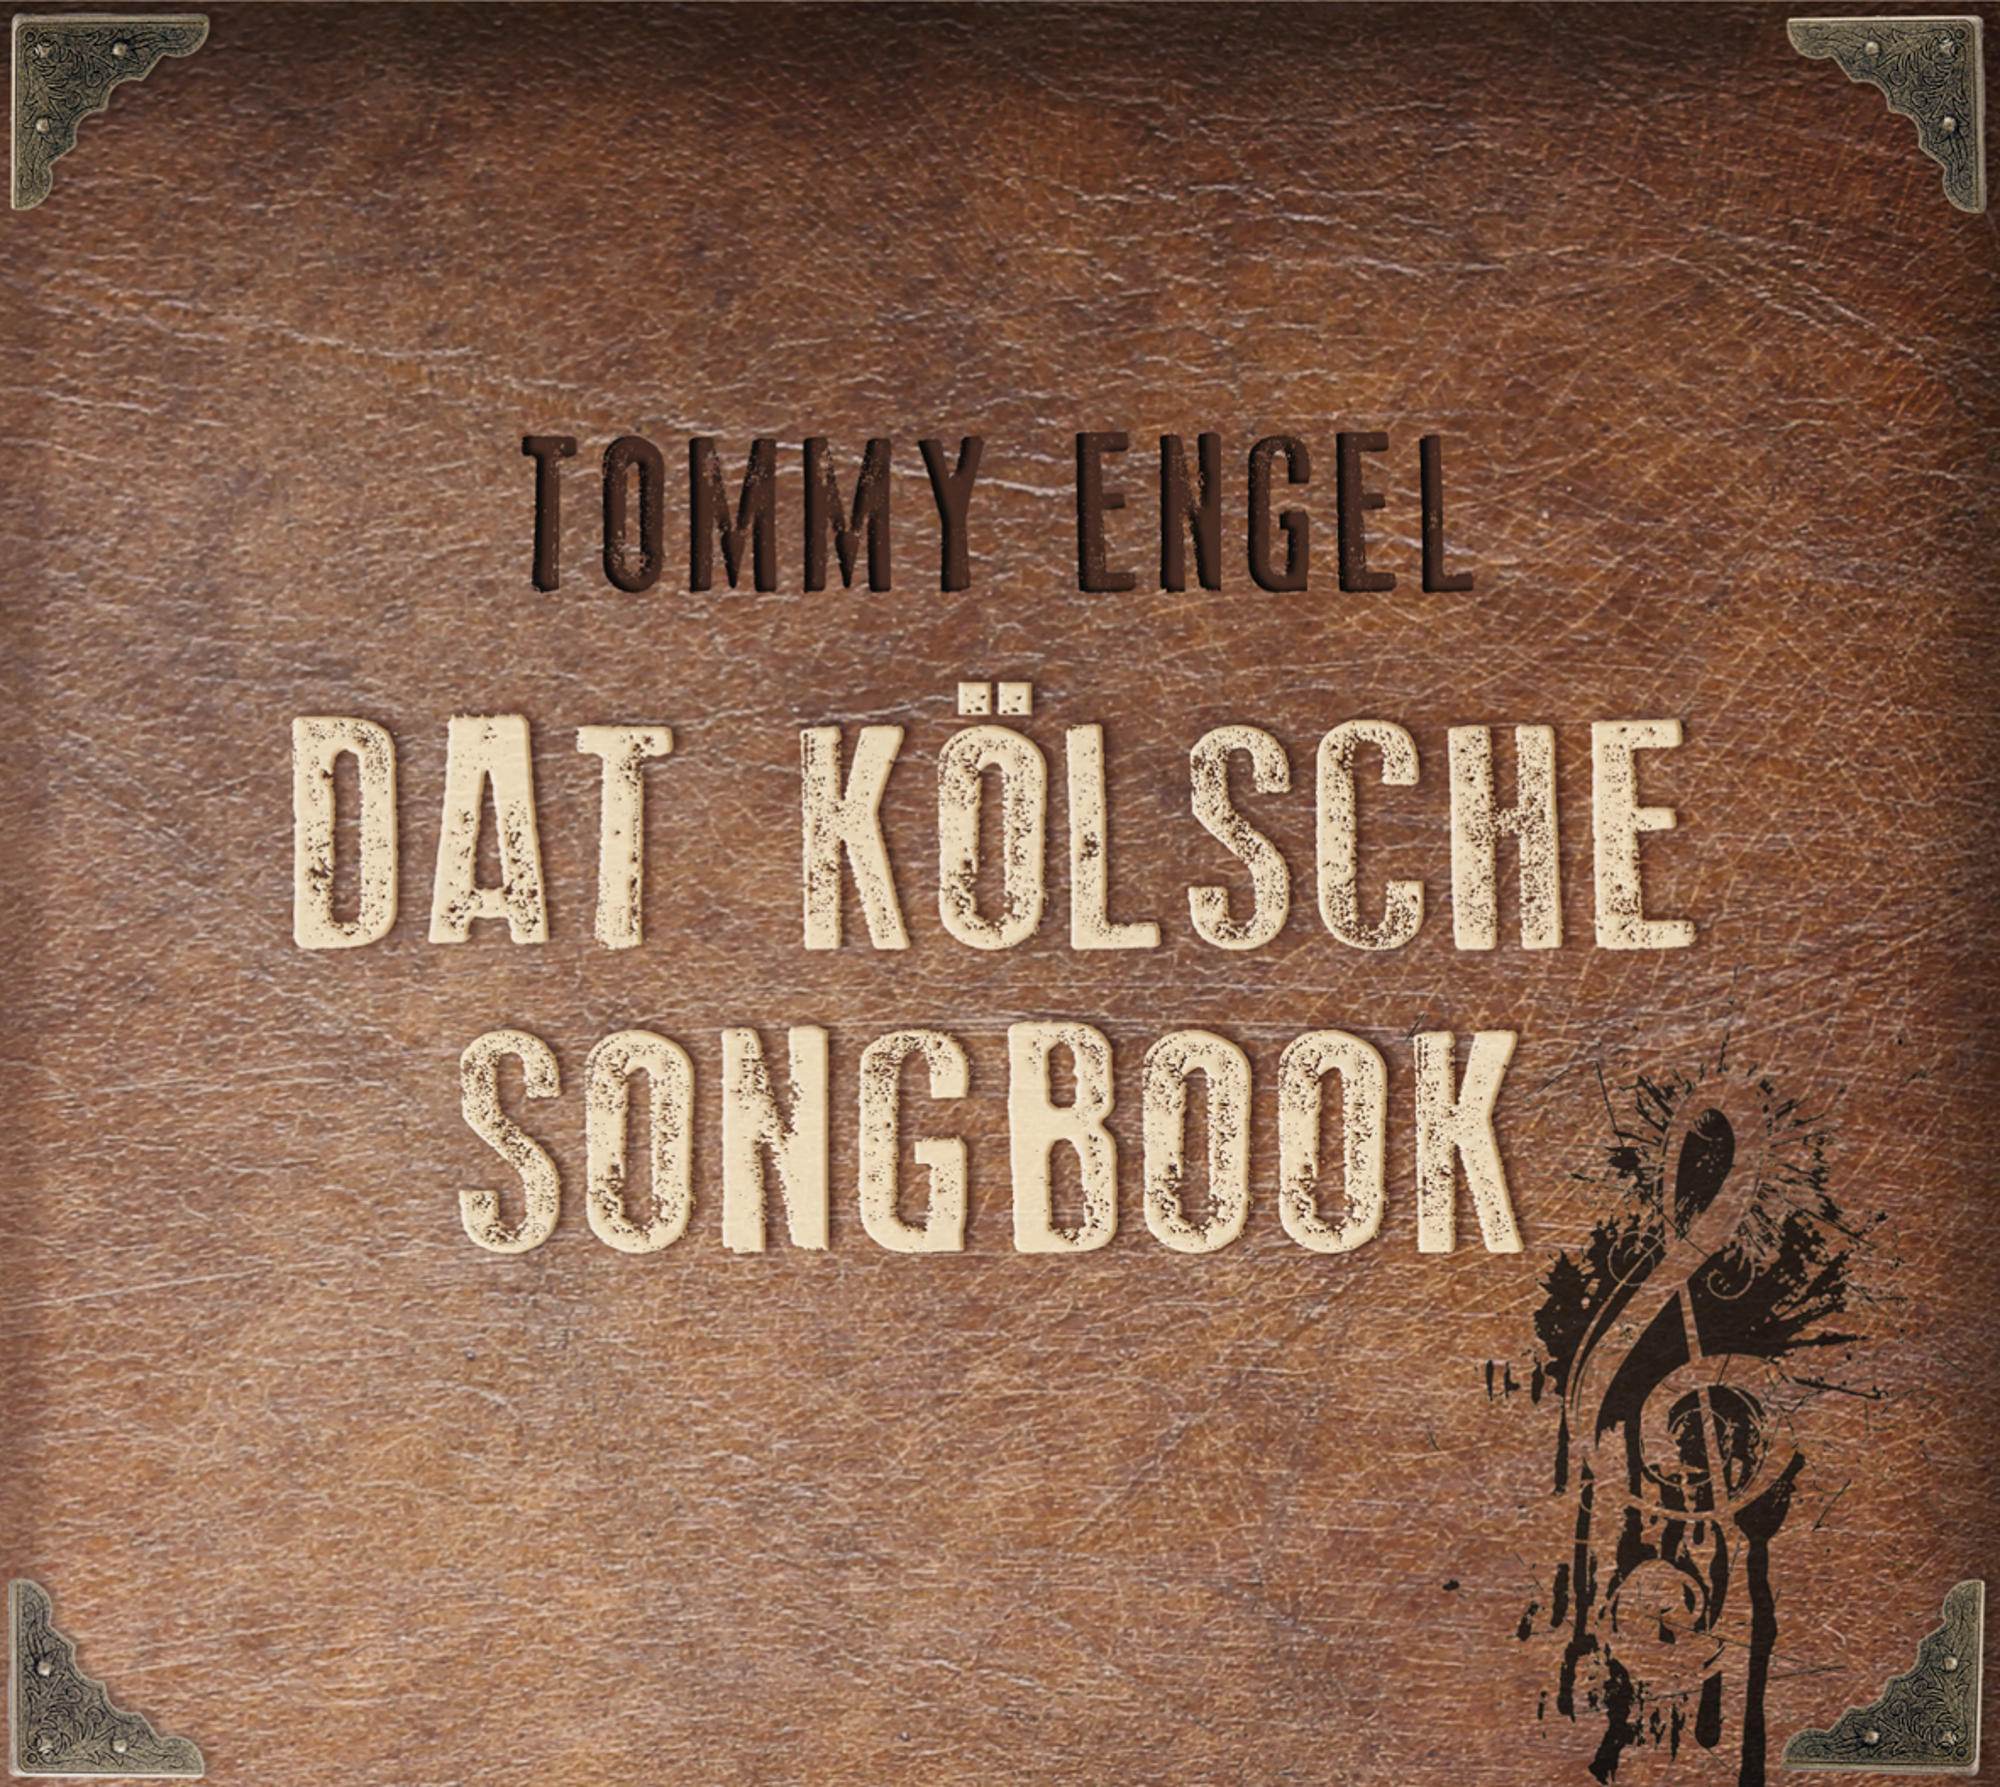 Tommy Engel - Dat kölsche - (CD) Songbook